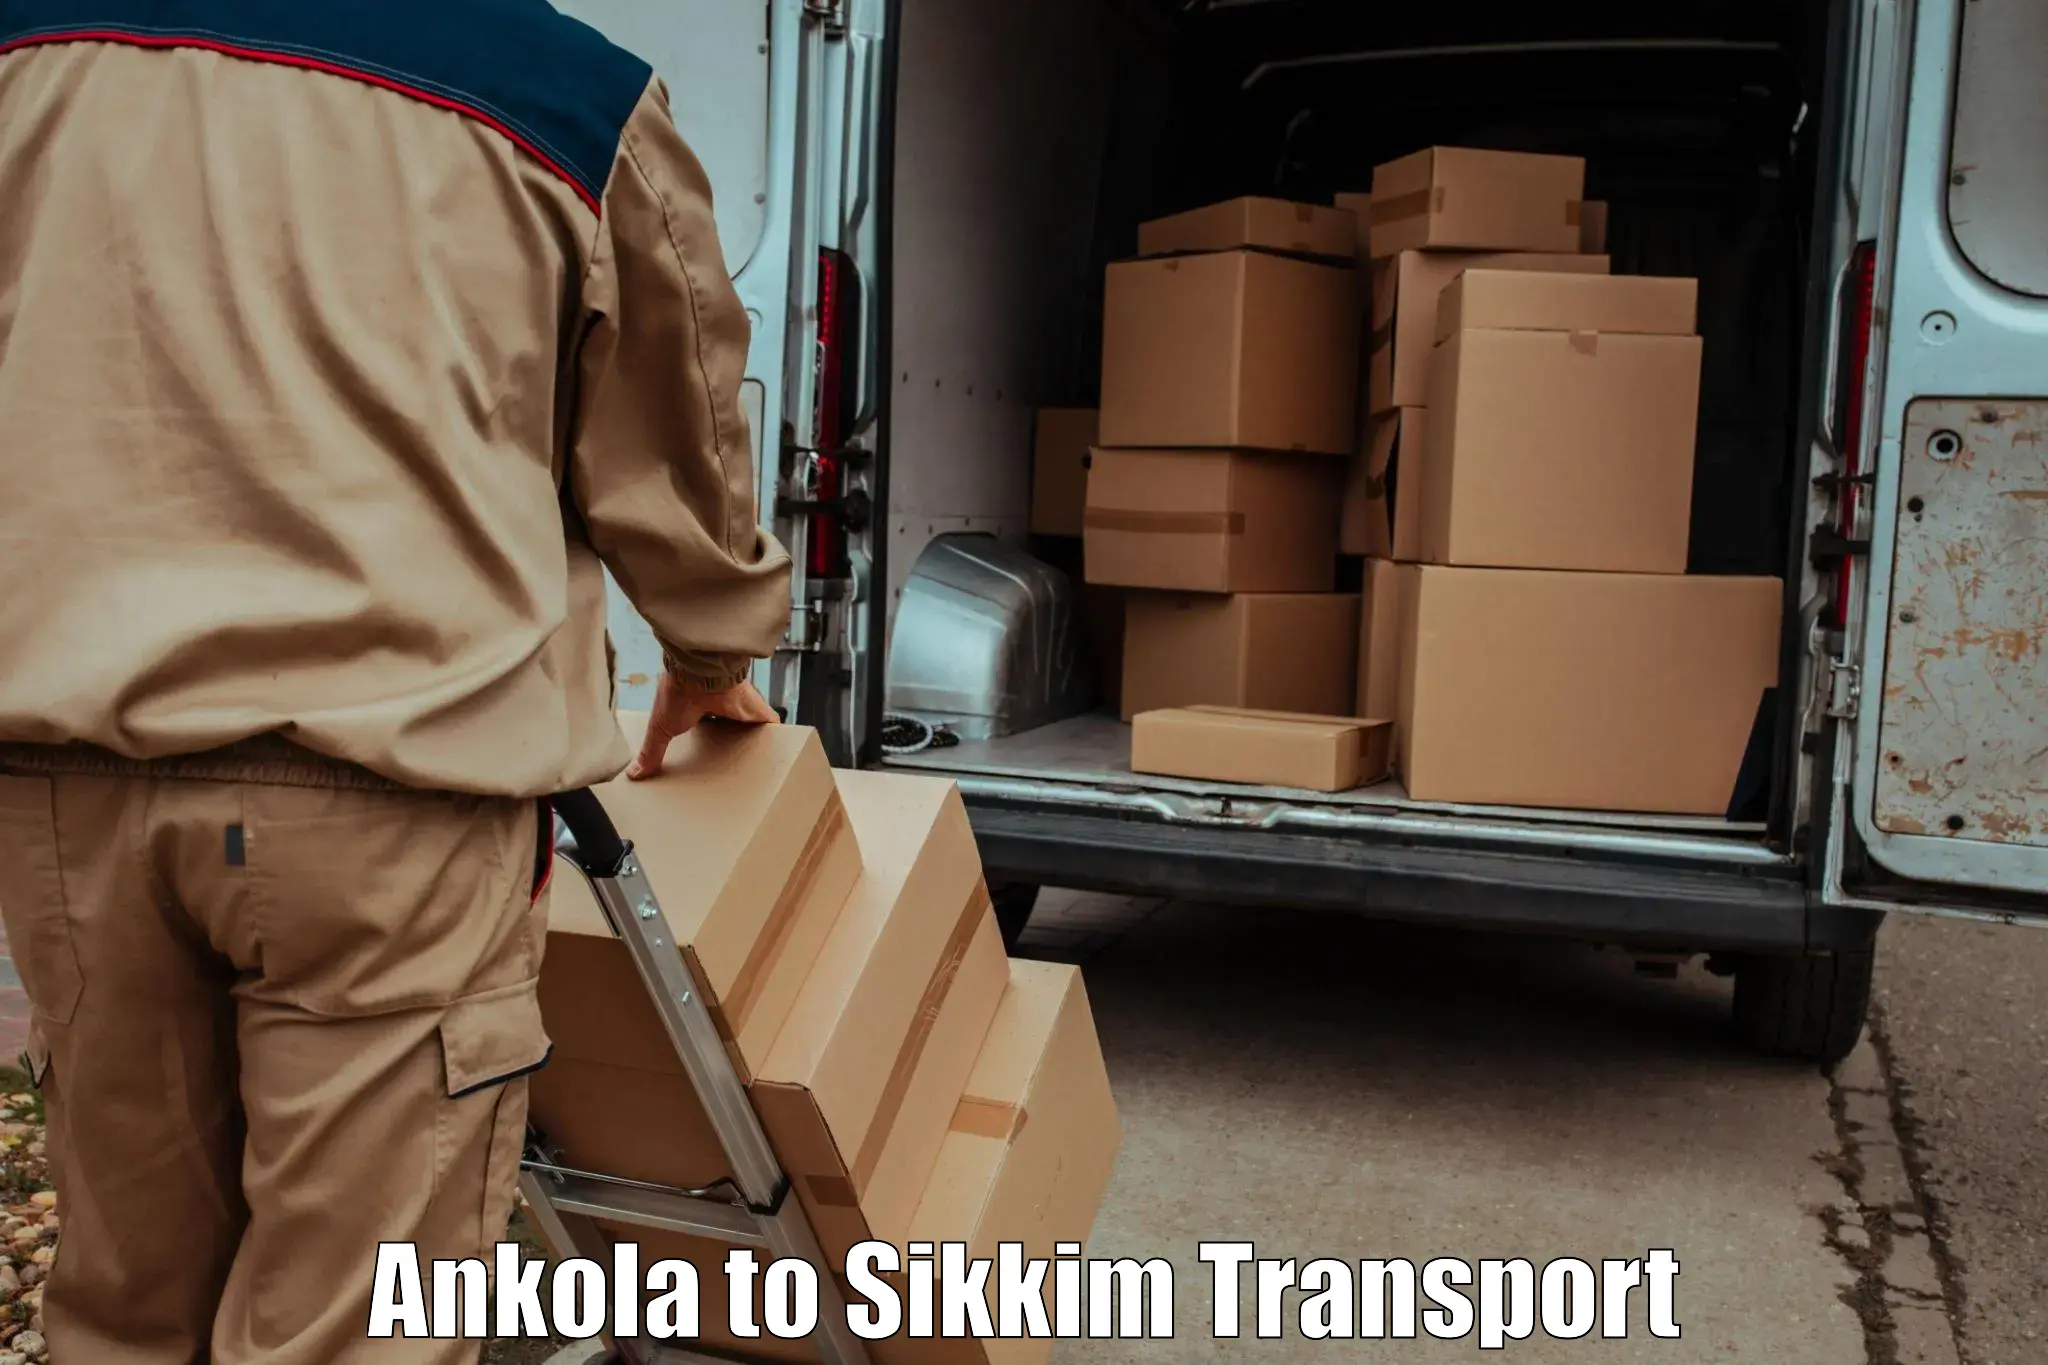 Pick up transport service Ankola to Sikkim